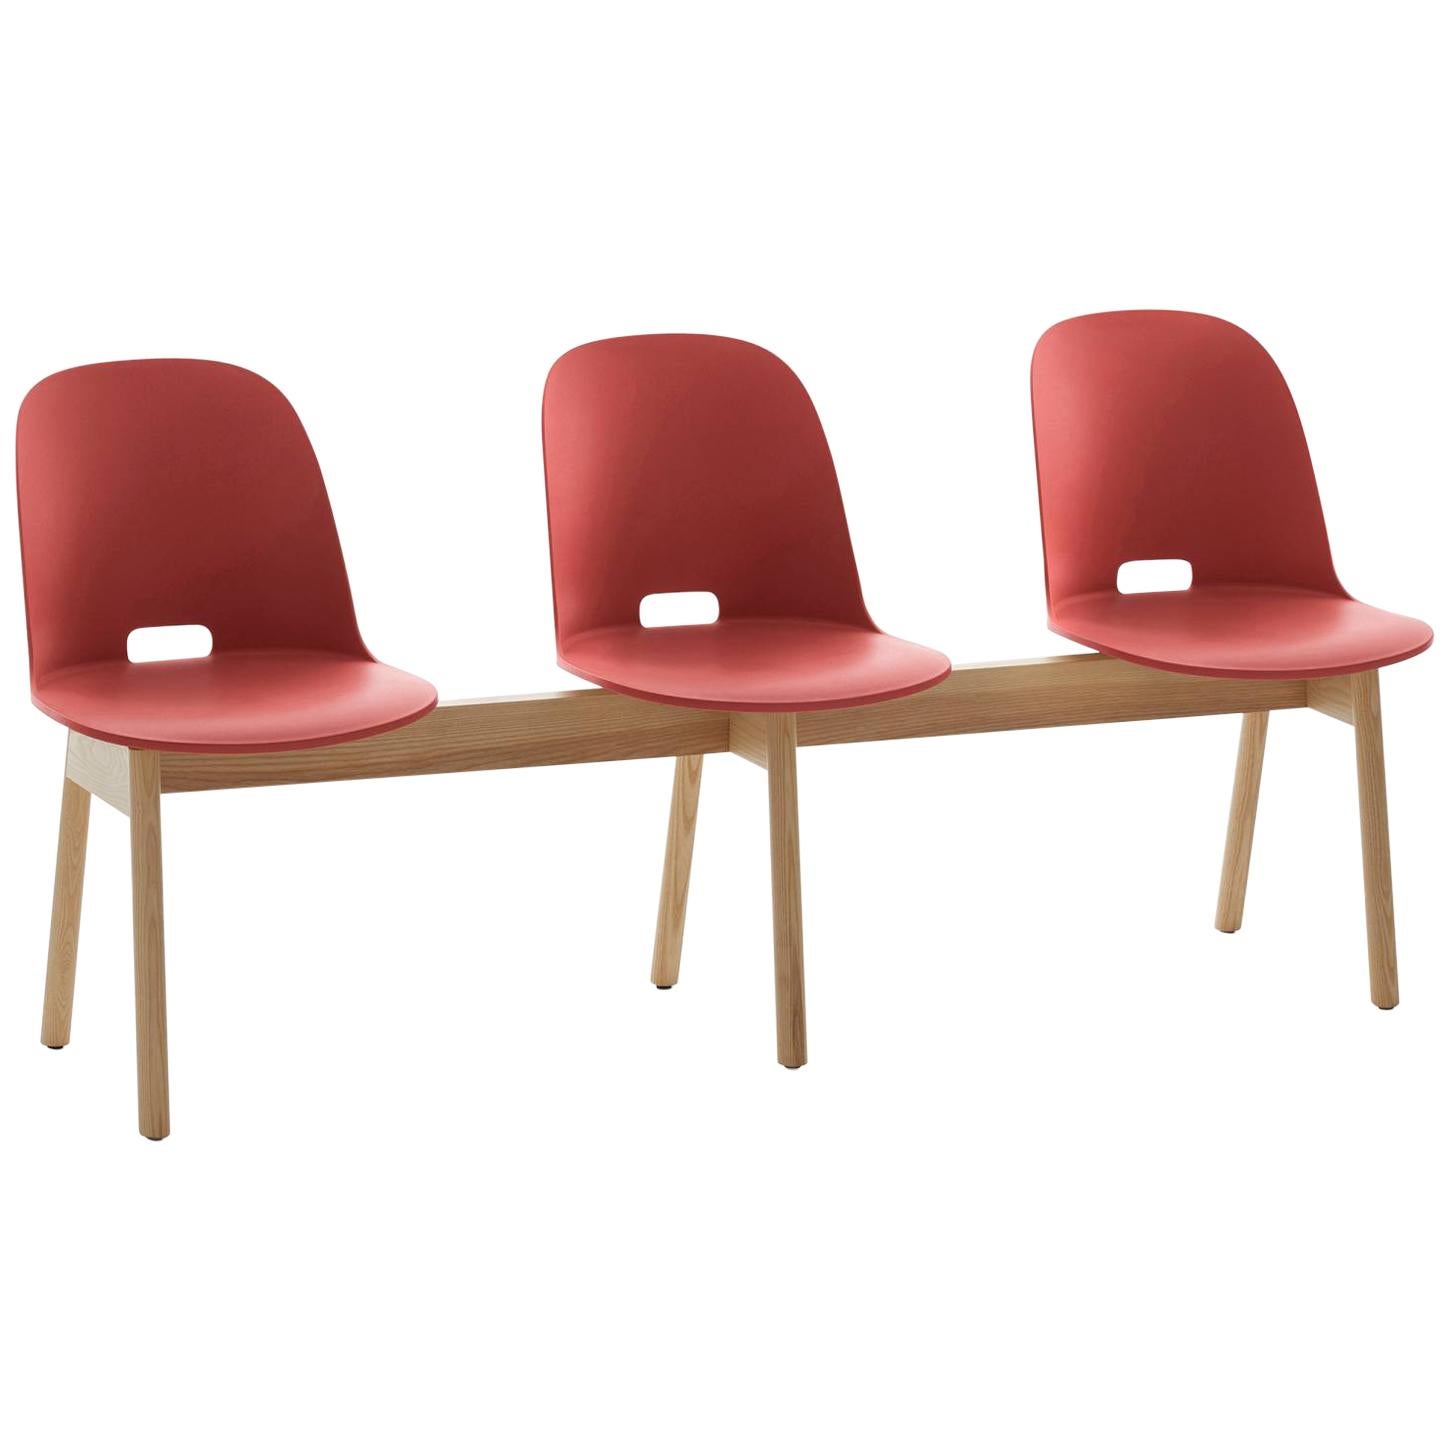 Emeco Alfi 3-Sitzbank in Rot und Eschenholz mit hoher Rückenlehne von Jasper Morrison